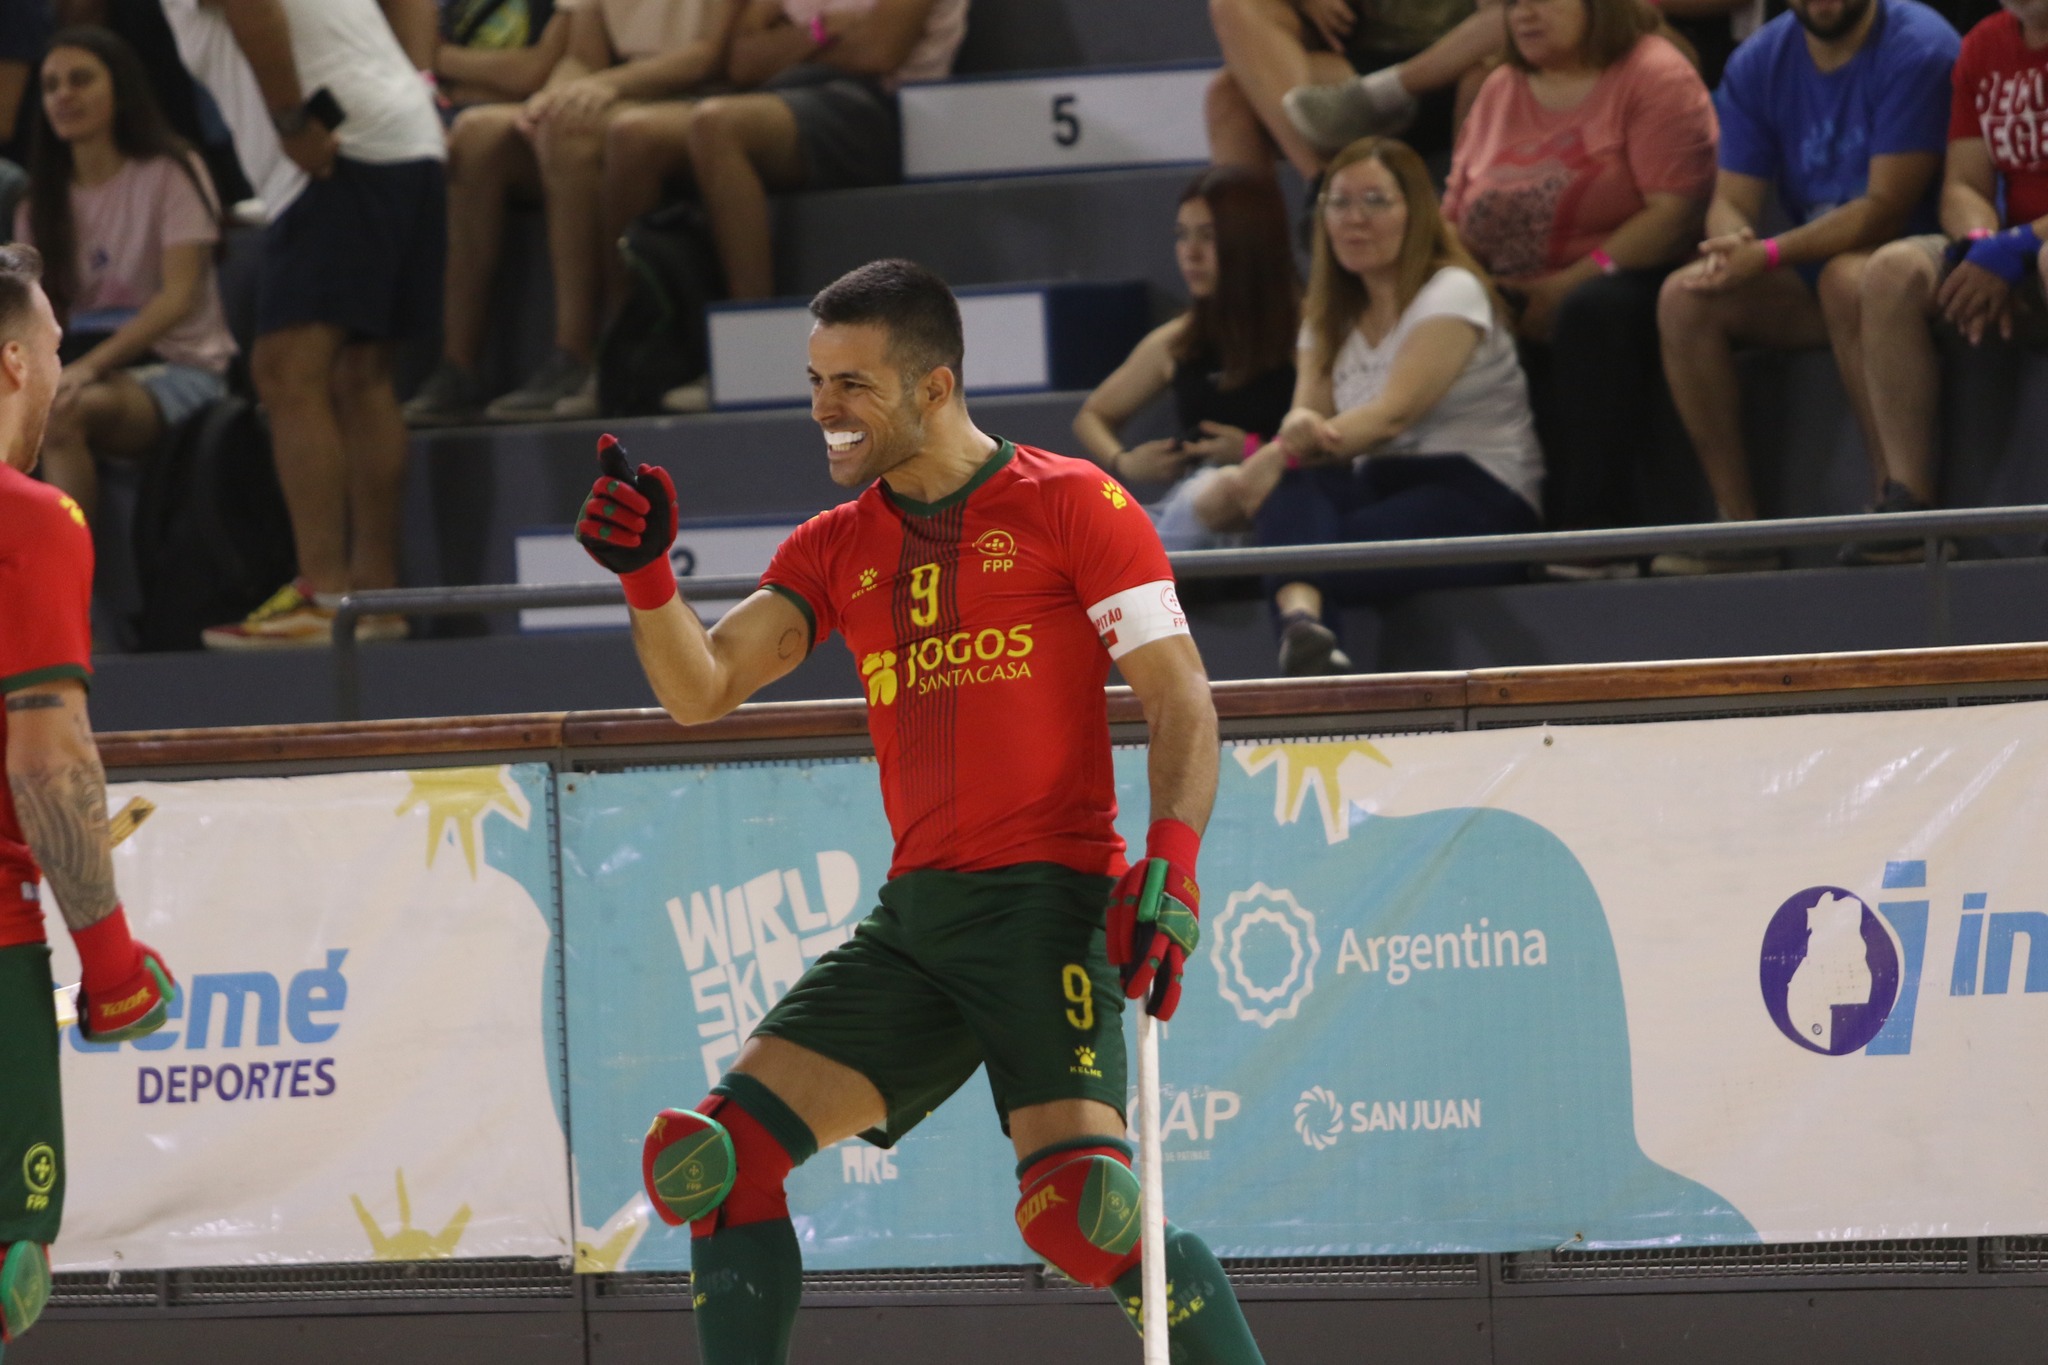 Alfaiate – Carmelo De Grazia Suárez// Portugal goleia e vence grupo rumo aos “quartos” do Mundial